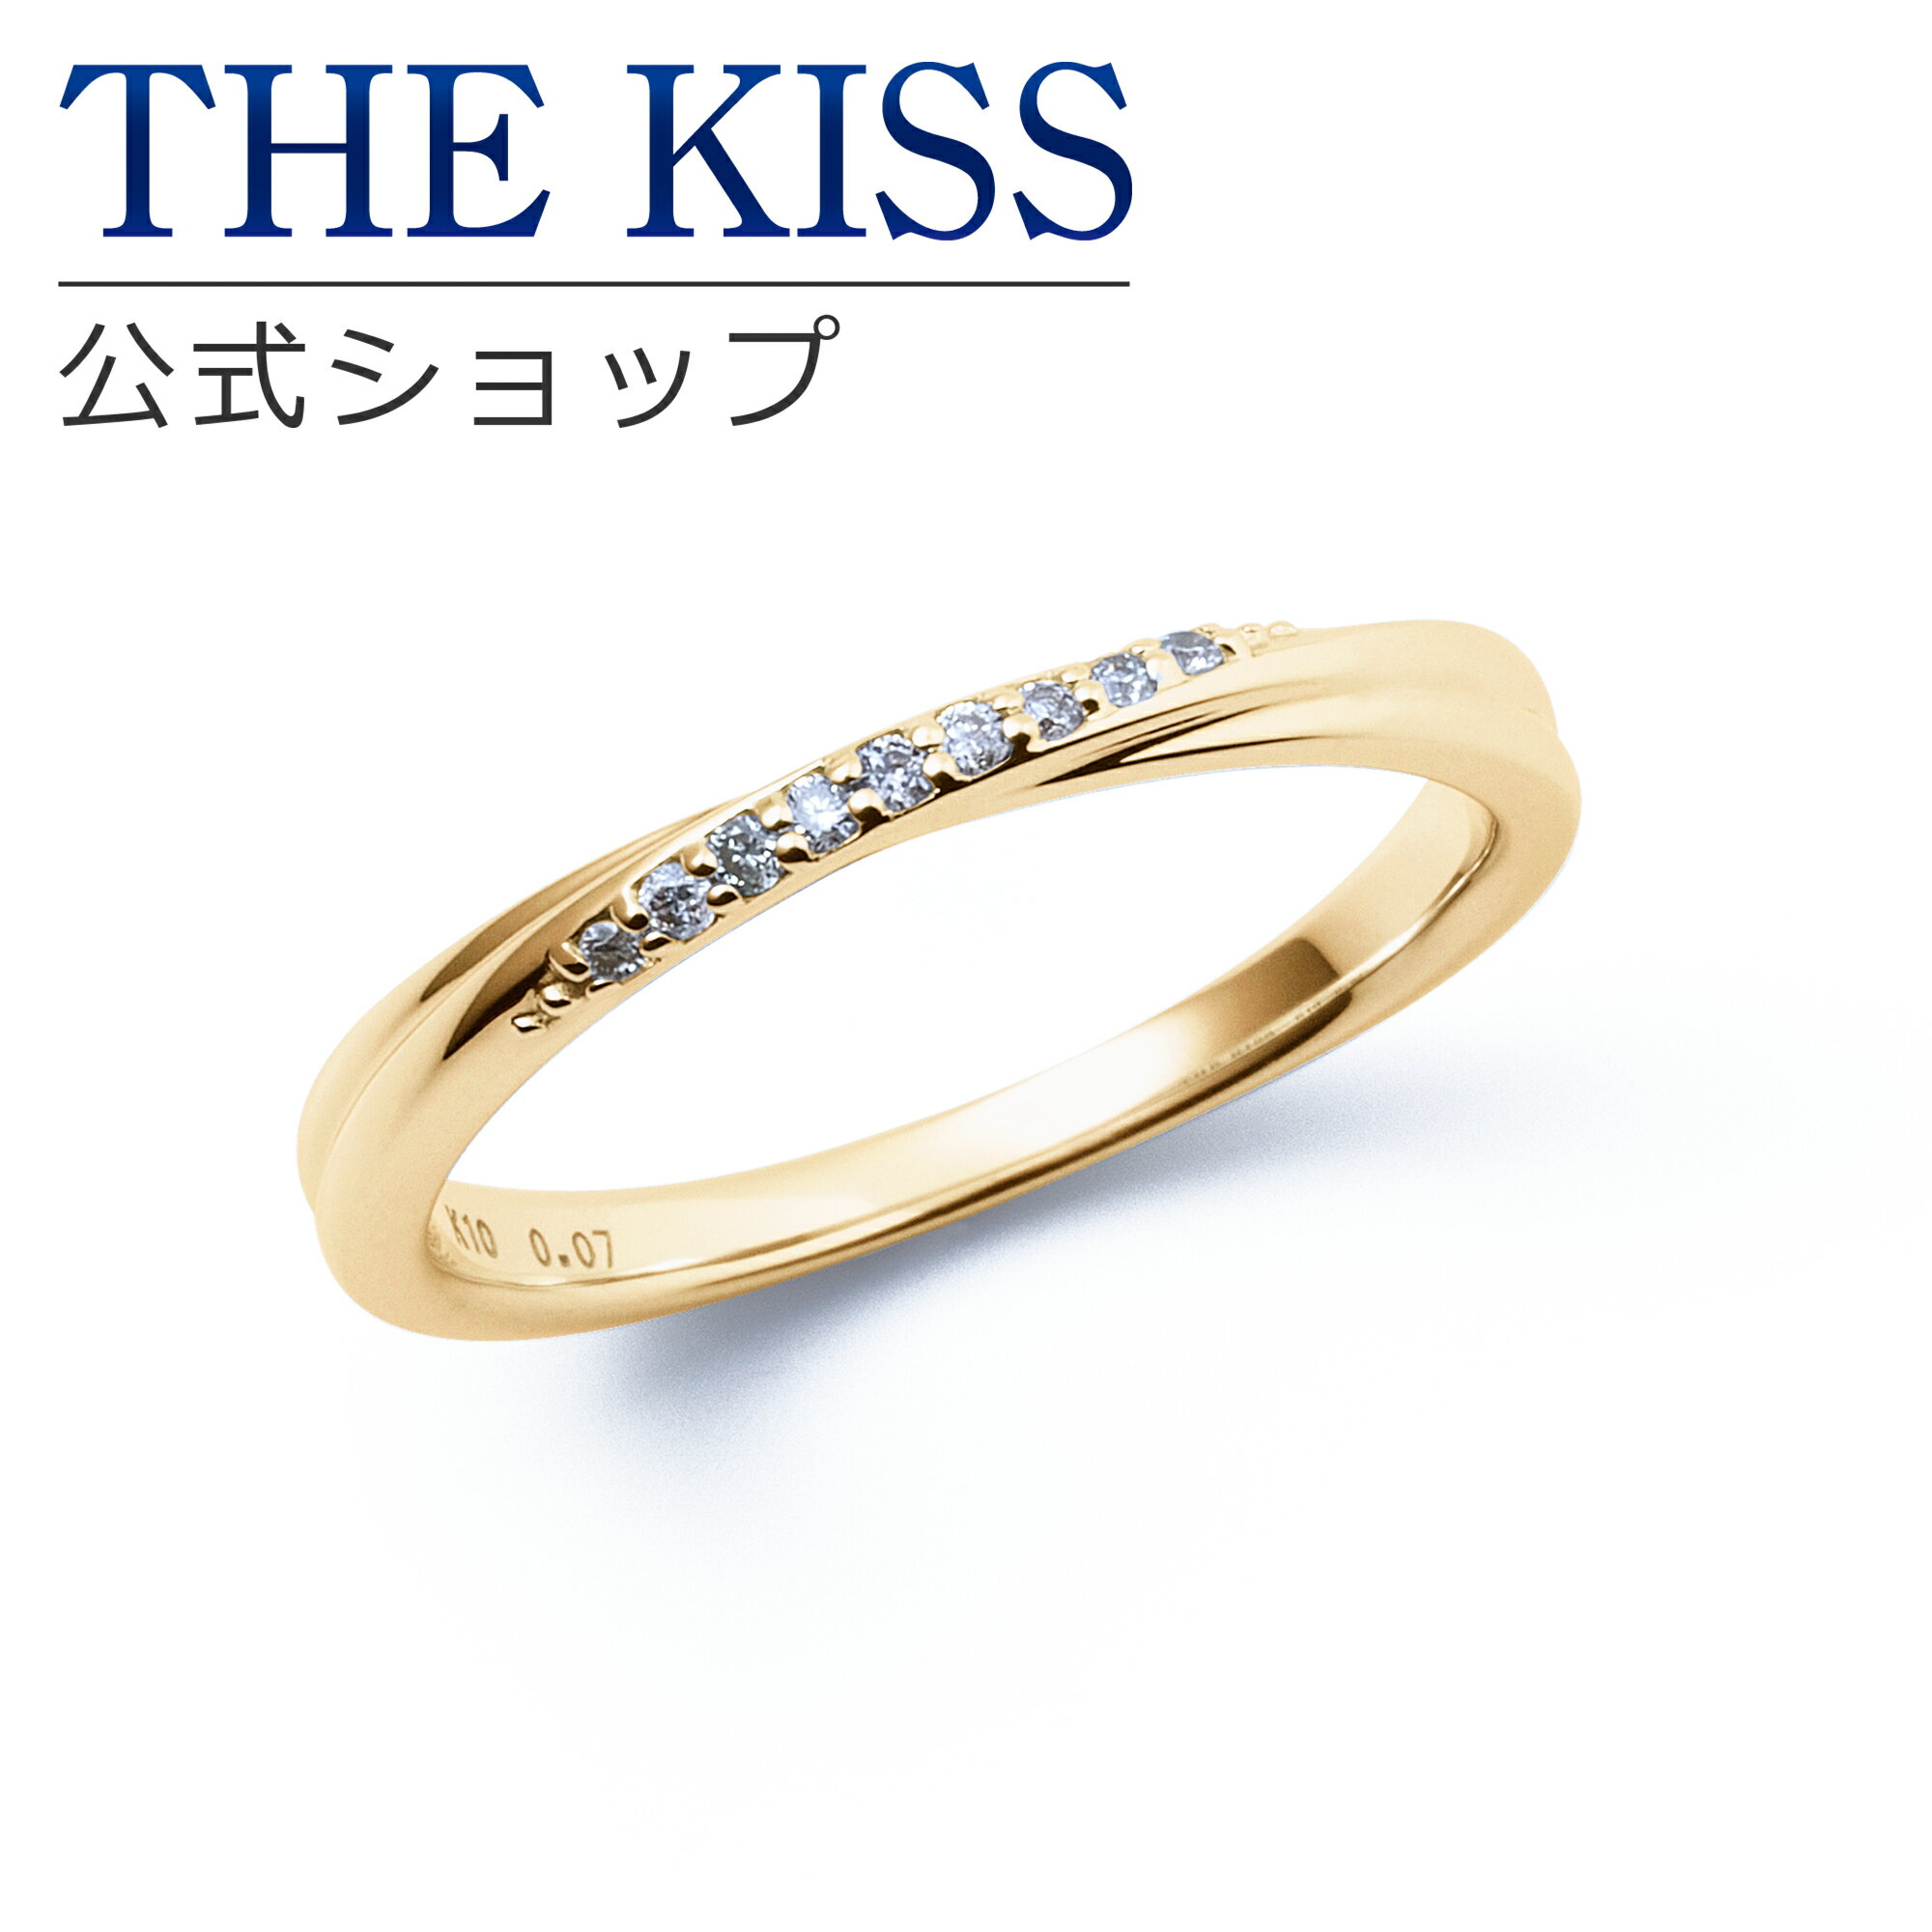 【ラッピング無料】【刻印無料】【THE KISS Anniversary】 THE KISS 公式ショップ K10 イエローゴールド マリッジ リング 結婚指輪 ペアリング （ レディース 単品 ） yg カップル 人気 ジュエリーブランド THEKISS ザキッス 指輪 7581122021 シンプル 女性 ブライダル